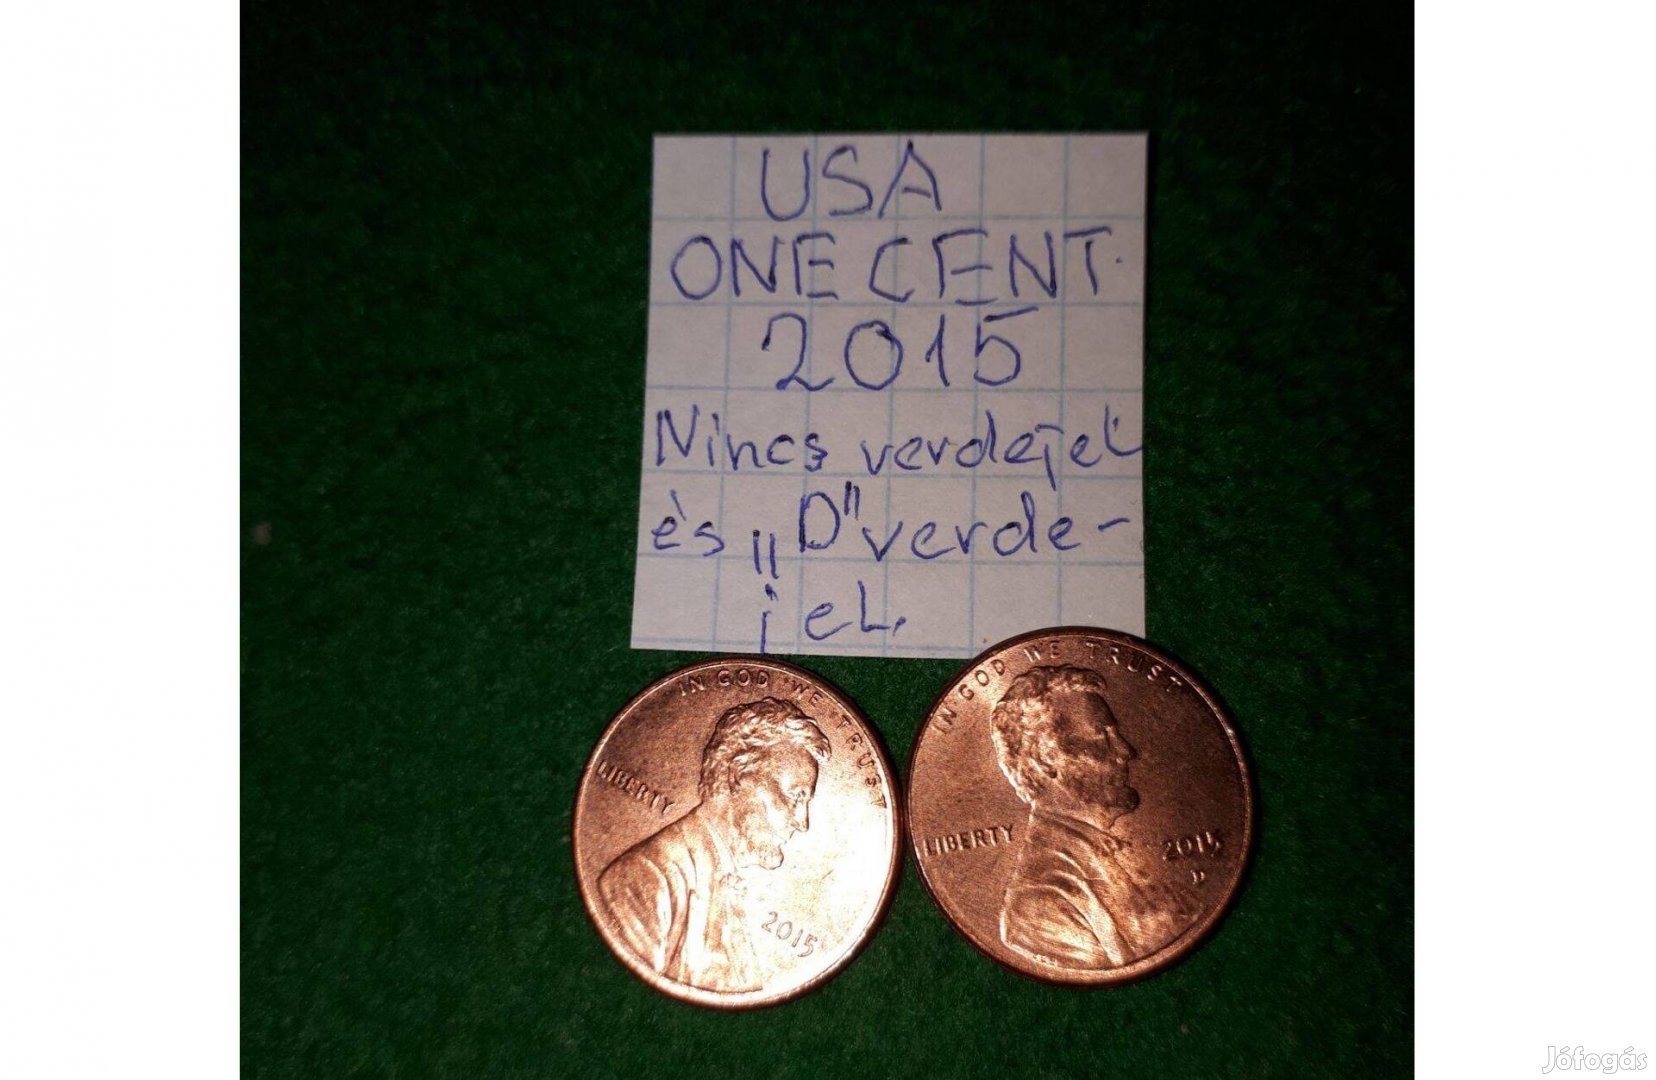 USA 1 cent 2015 2 db nincs verdejel és "D" verdejel